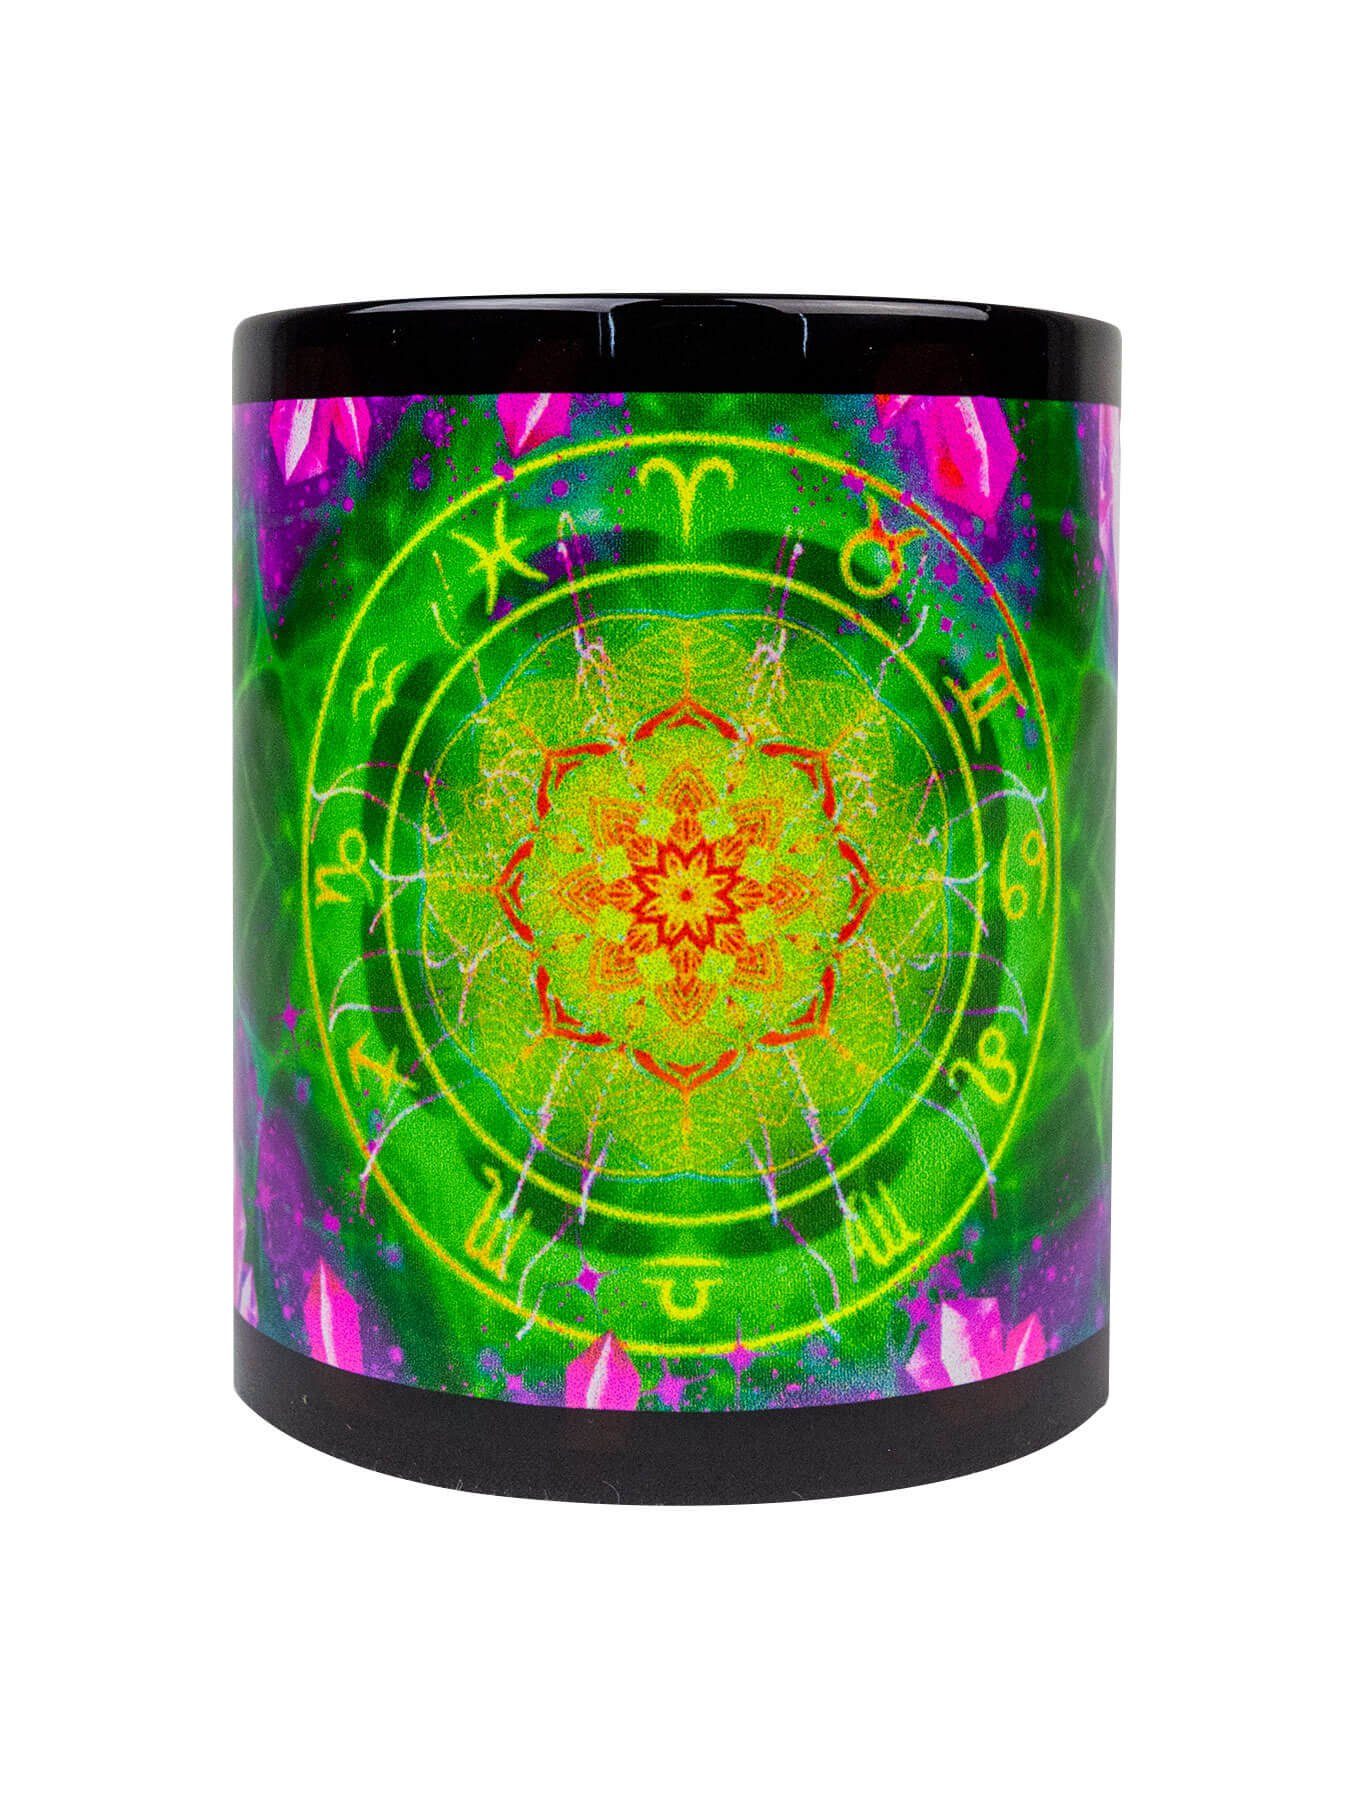 unter Tasse Cup Fluo UV-aktiv, PSYWORK Neon Schwarzlicht Keramik, Tasse leuchtet Green", "Zodiac Signs Motiv